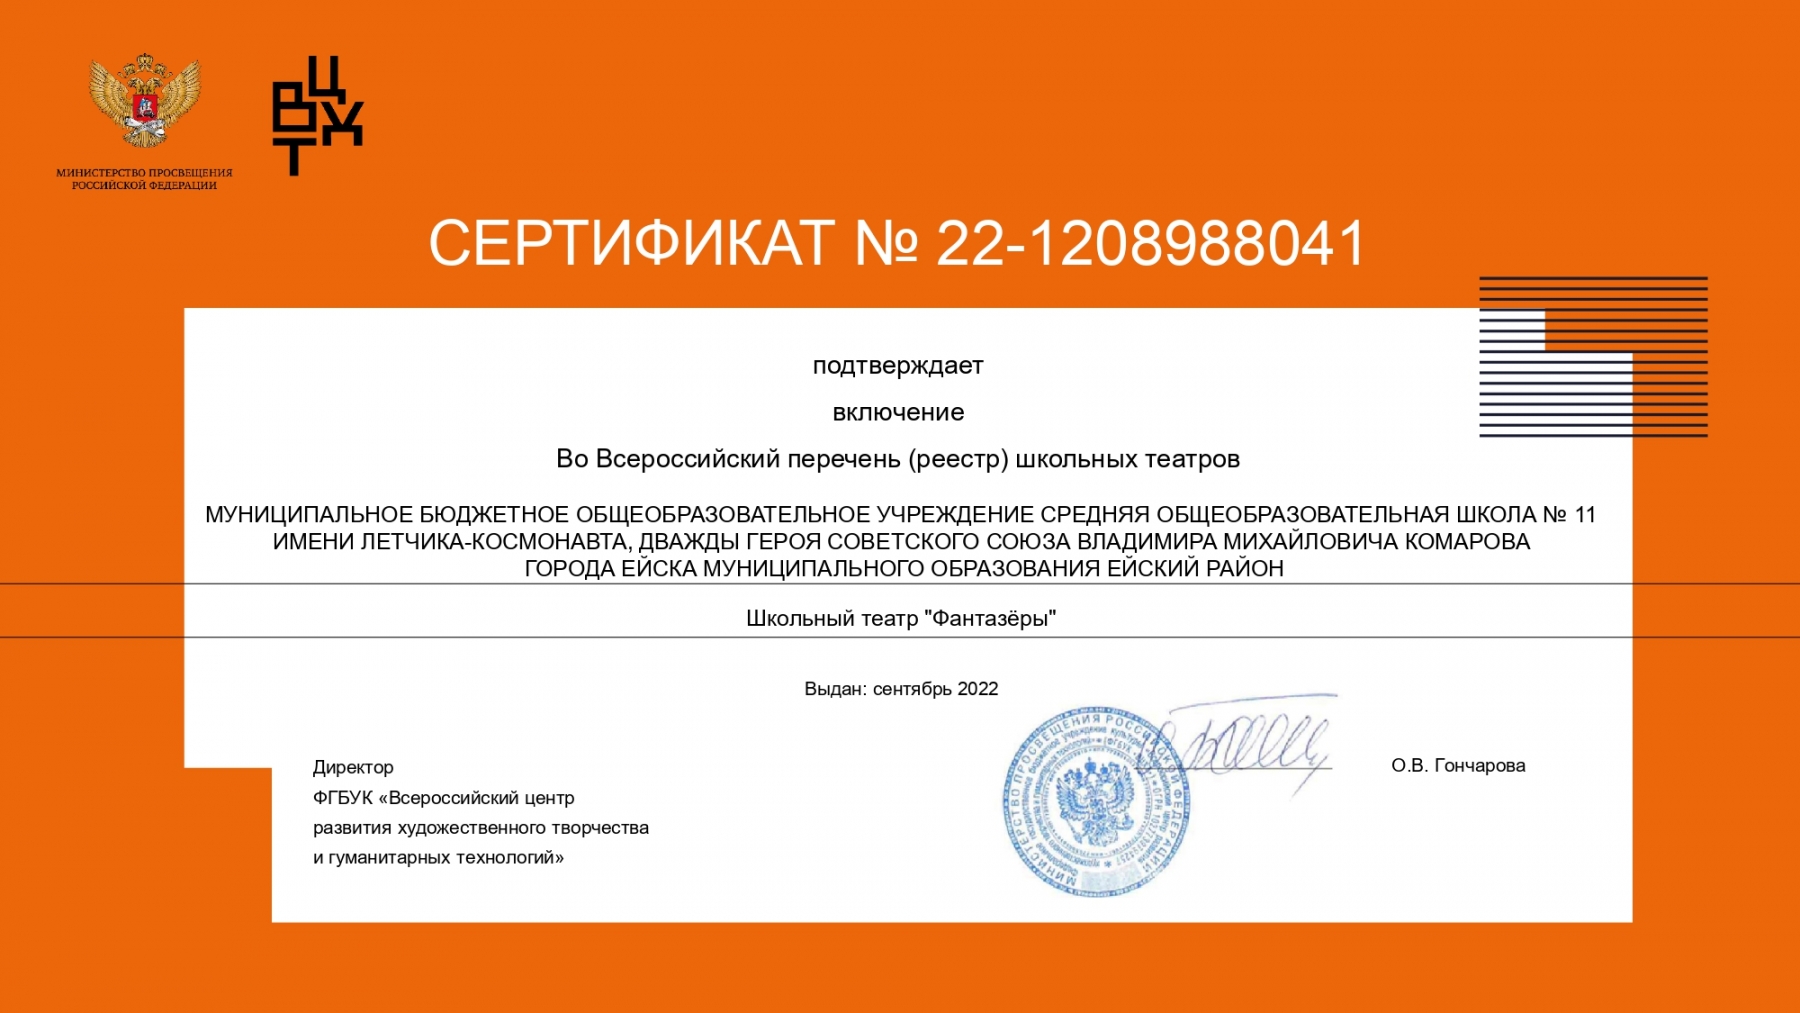 Сертификат_22-1208988041_page-0001